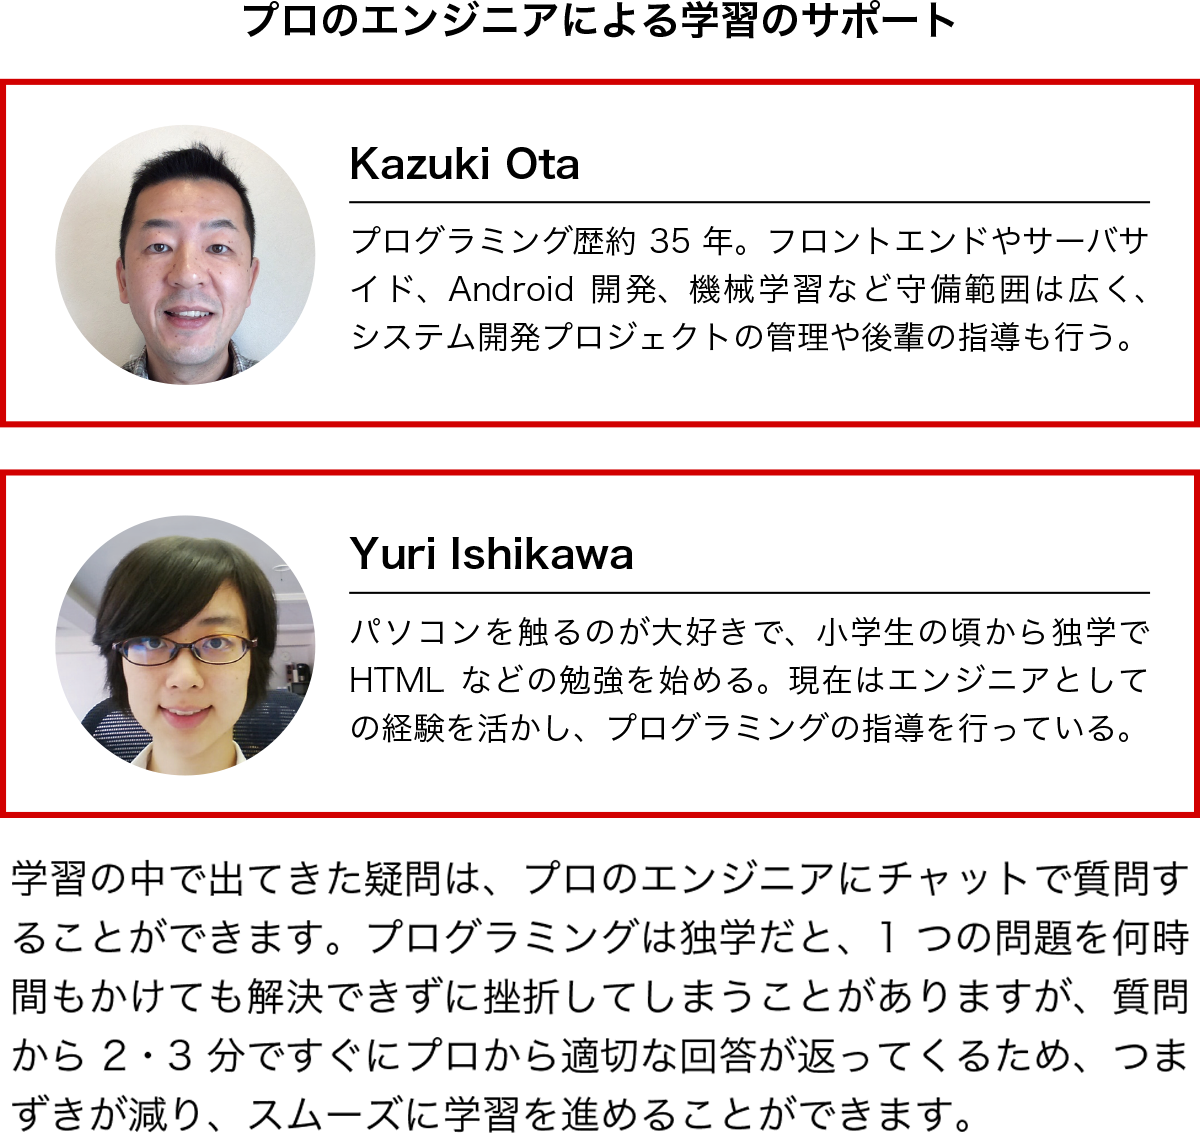 プロのエンジニアによる学習のサポート【Kazuki Ota】プログラミング歴約35年。フロントエンドやサーバサイド、Android開発、機械学習など守備範囲は広く、システム開発プロジェクトの管理や後輩の指導も行う。【Yuri Ishikawa 】パソコンを触るのが大好きで、小学生の頃から独学でHTMLなどの勉強を始める。現在はエンジニアとしての経験を活かし、プログラミングの指導を行っている。/学習の中で出てきた疑問は、プロのエンジニアにチャットで質問することができます。プログラミングは独学だと、1つの問題を何時間もかけても解決できずに挫折してしまうことがありますが、質問から2・3分ですぐにプロから適切な回答が返ってくるため、つまずきが減り、スムーズに学習を進めることができます。